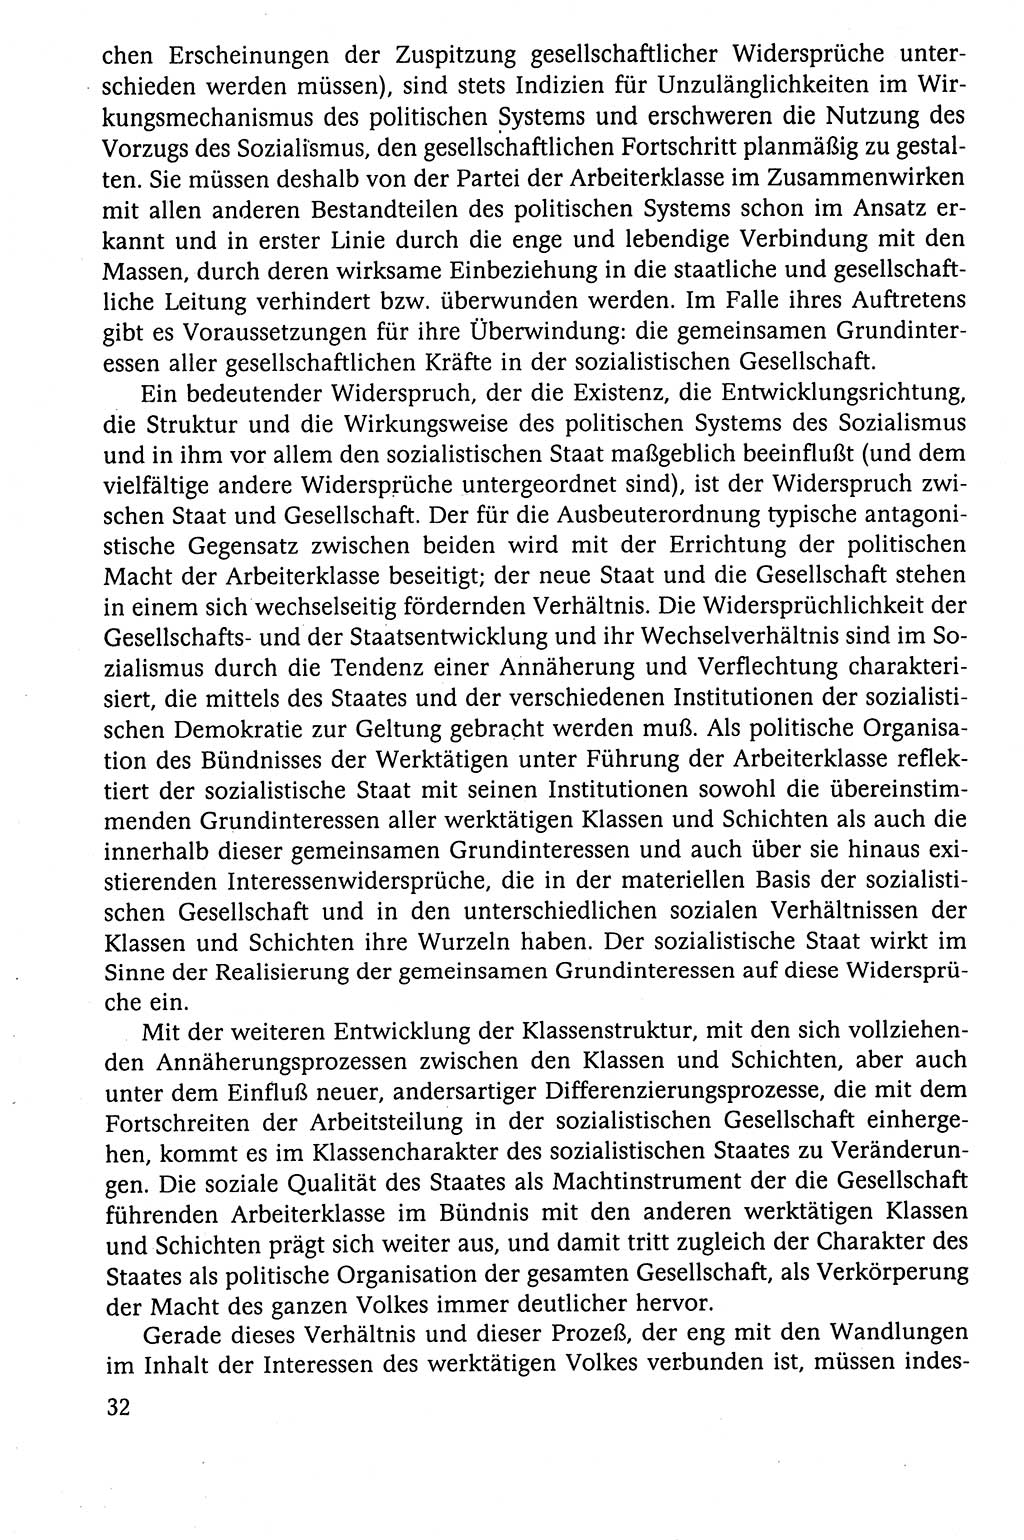 Der Staat im politischen System der DDR (Deutsche Demokratische Republik) 1986, Seite 32 (St. pol. Sys. DDR 1986, S. 32)